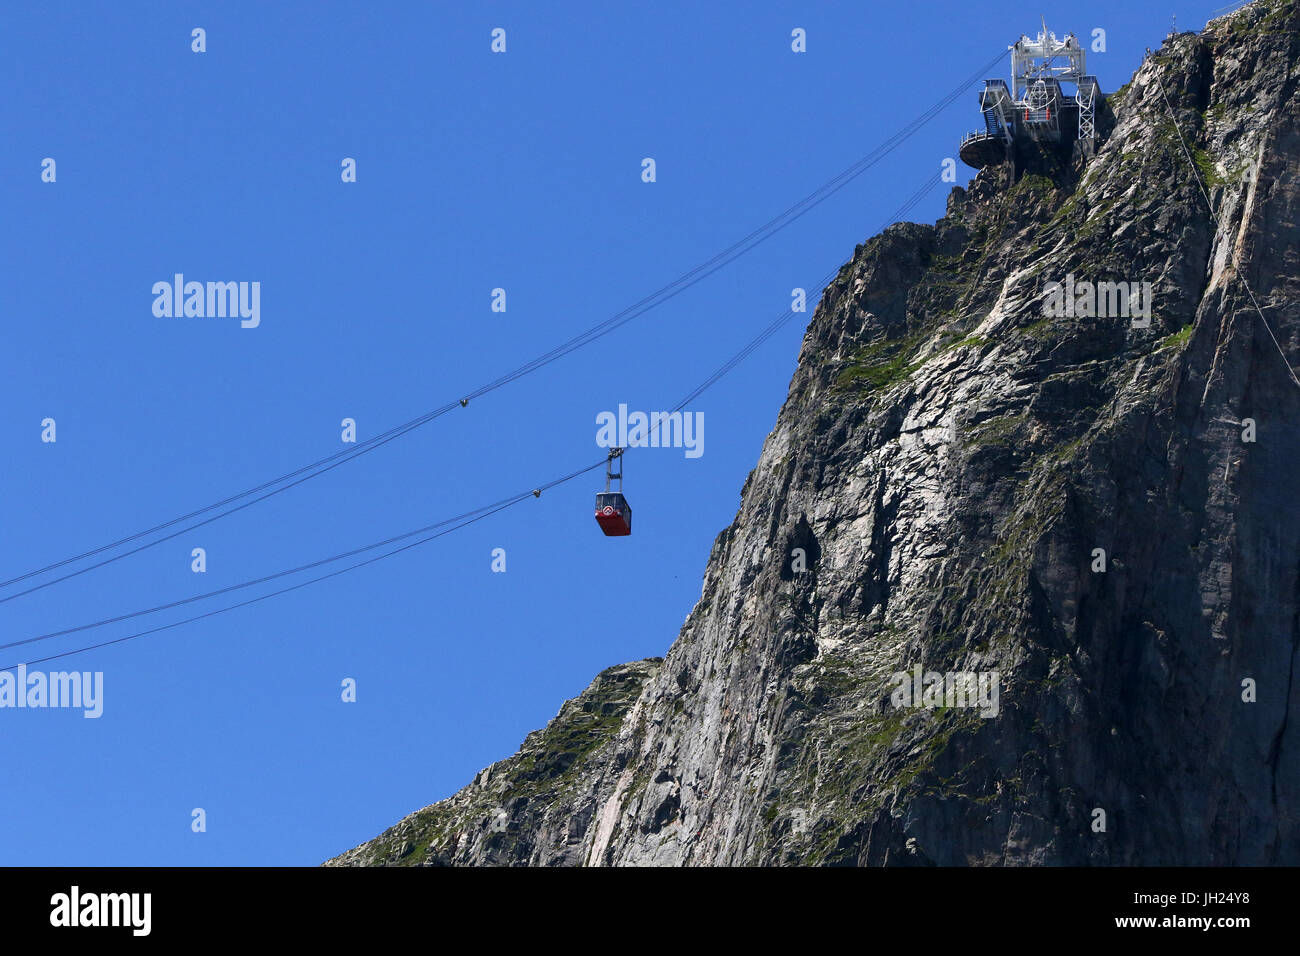 Sulle Alpi francesi. Massiccio del Monte Bianco. Ovovia al Brevent. Chamonix. La Francia. Foto Stock